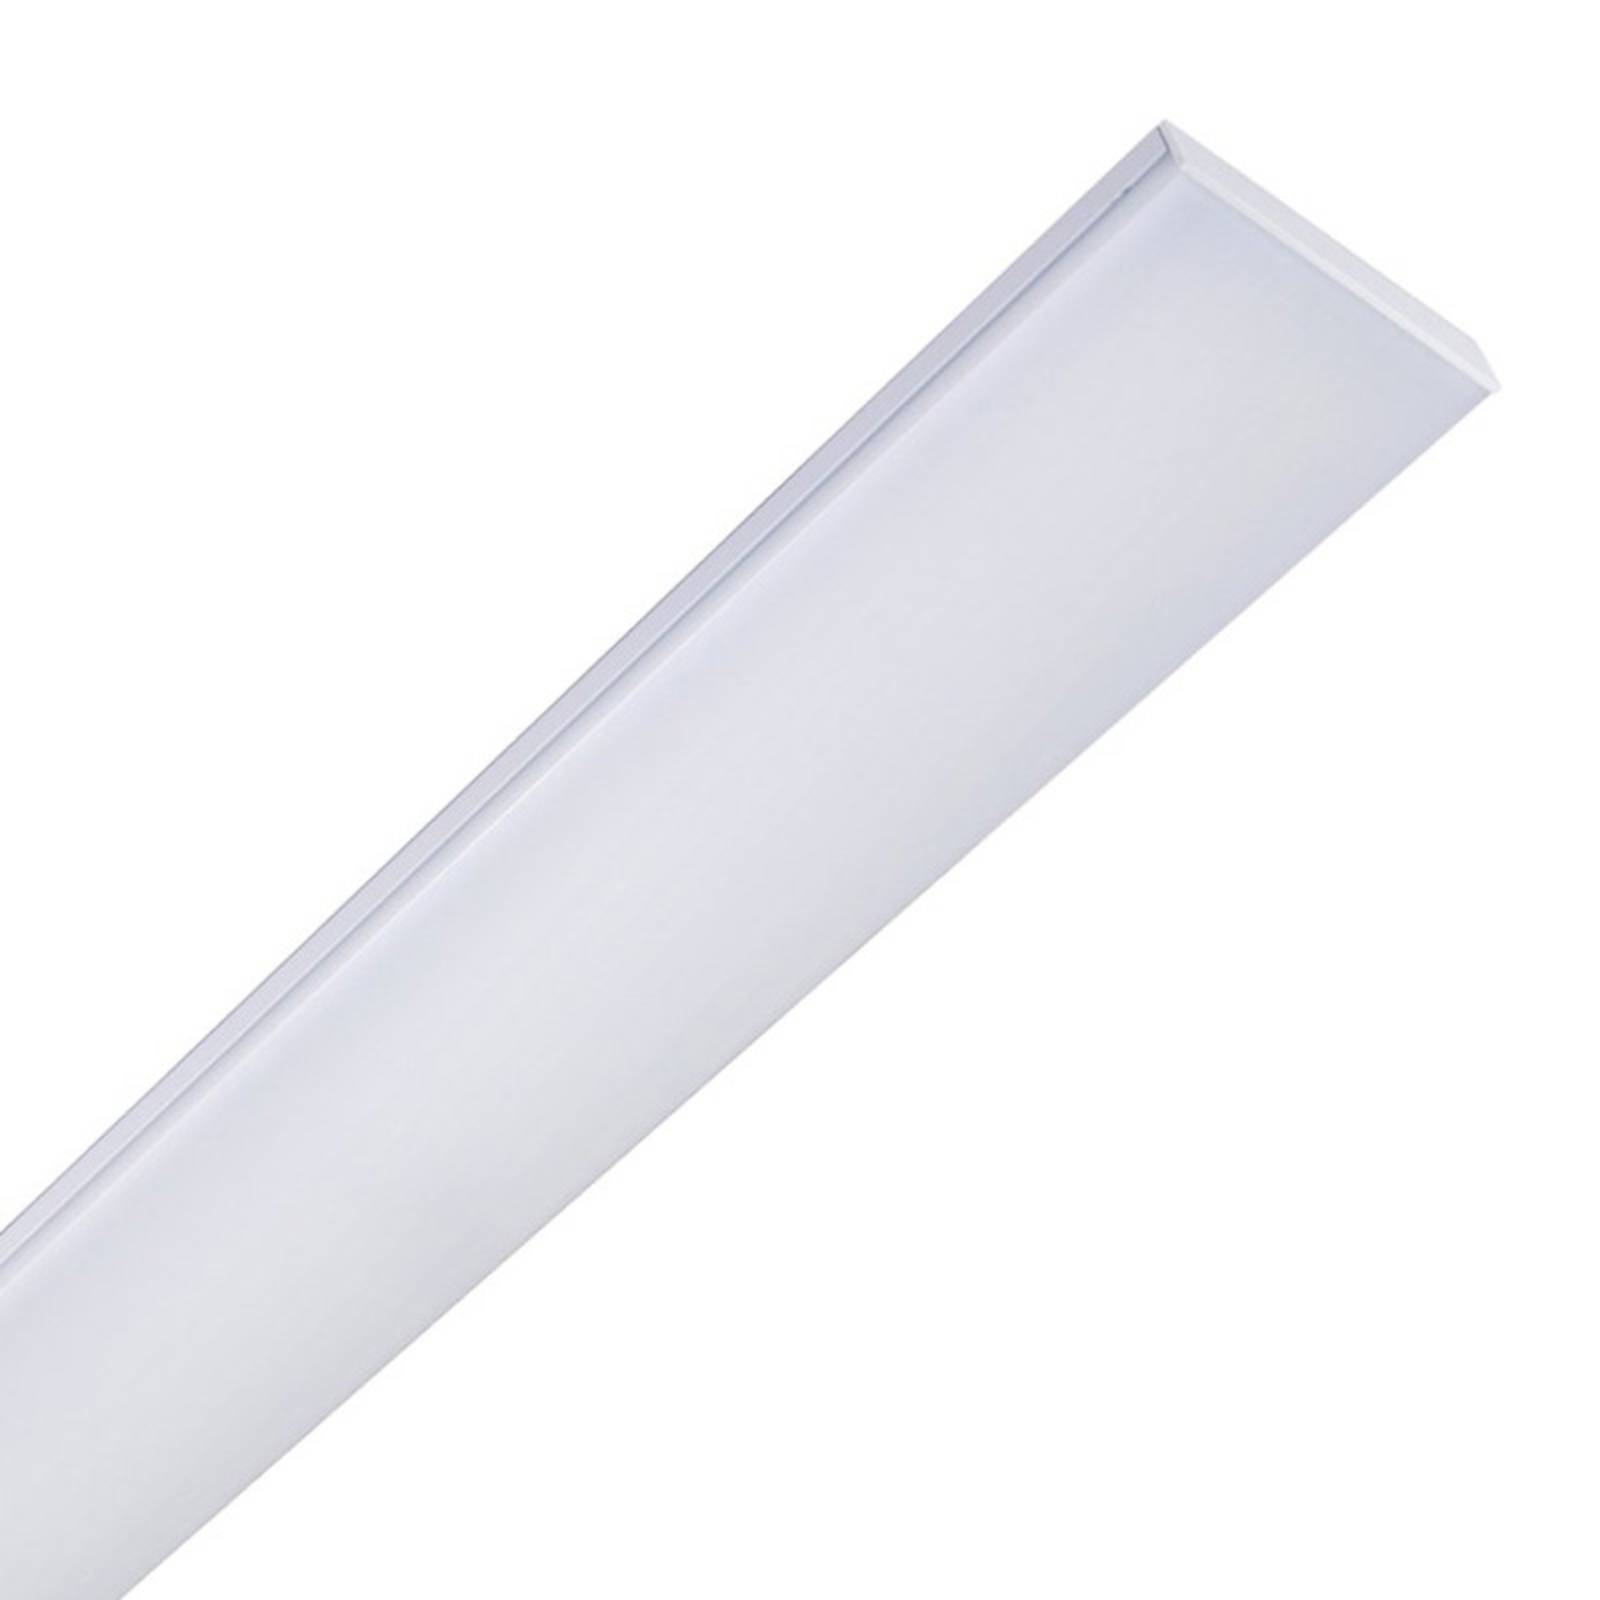 müller-licht plafonnier led planus 60 avec led blanc neutre